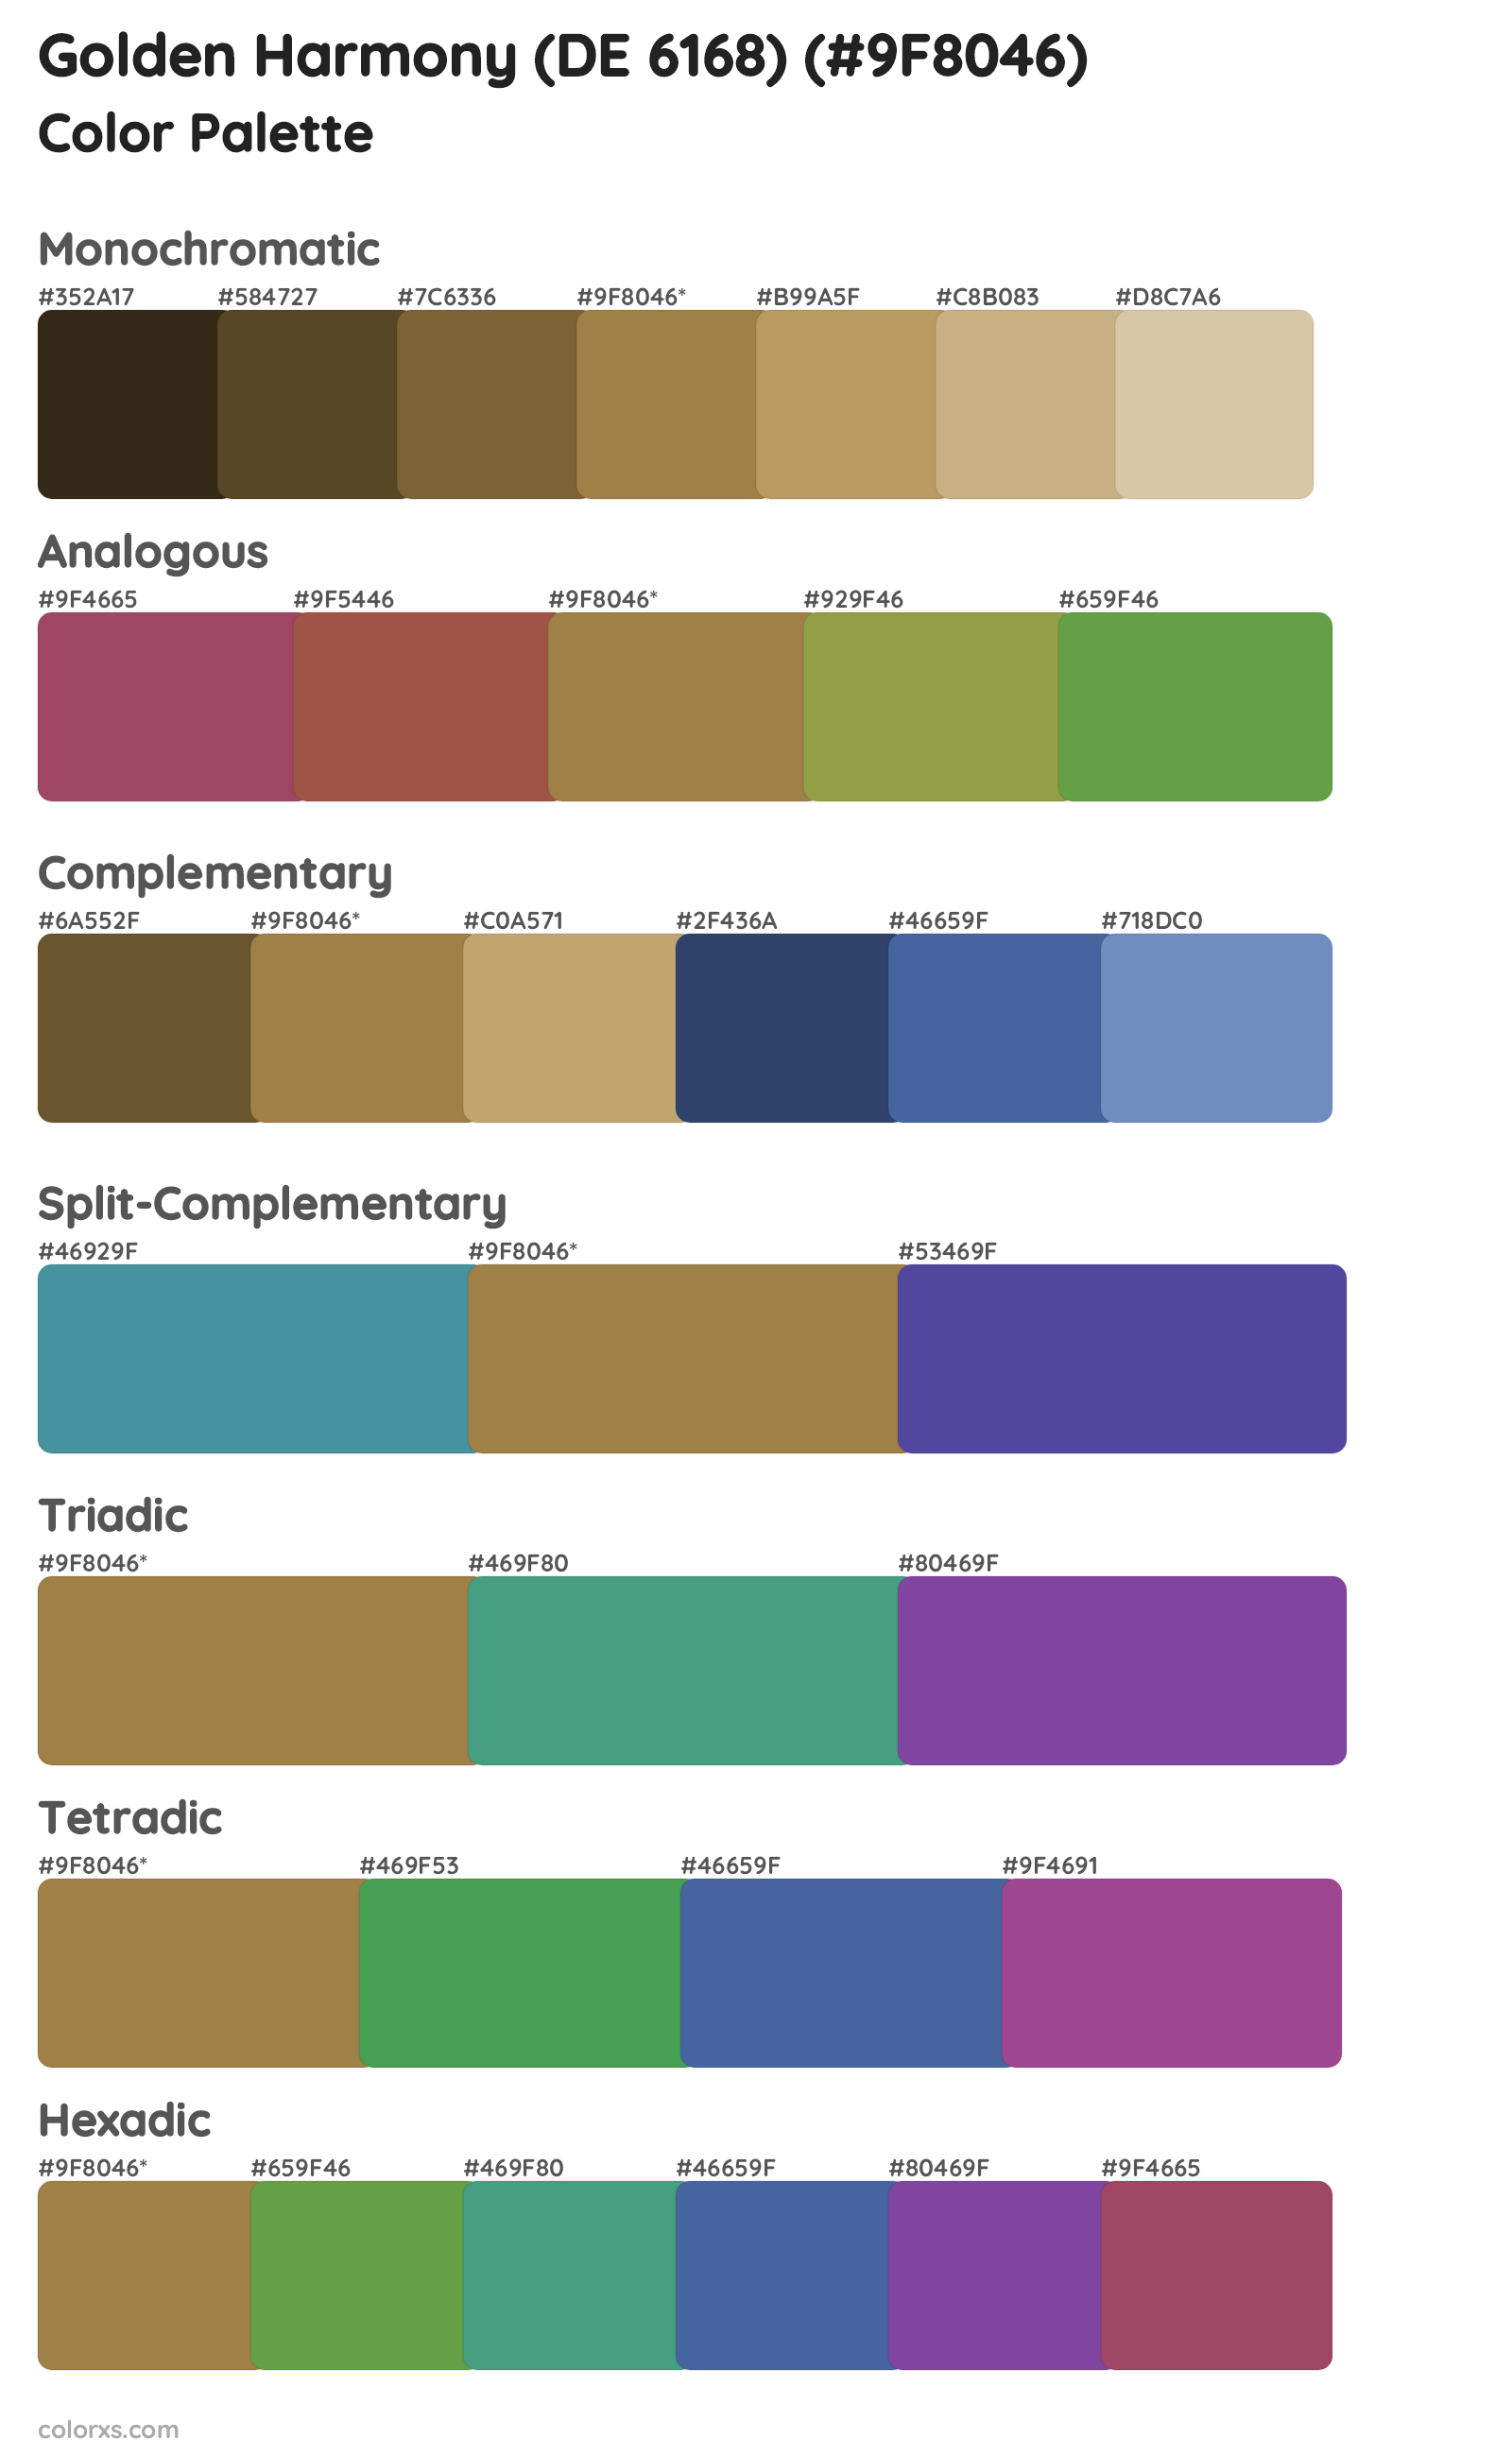 Golden Harmony (DE 6168) Color Scheme Palettes